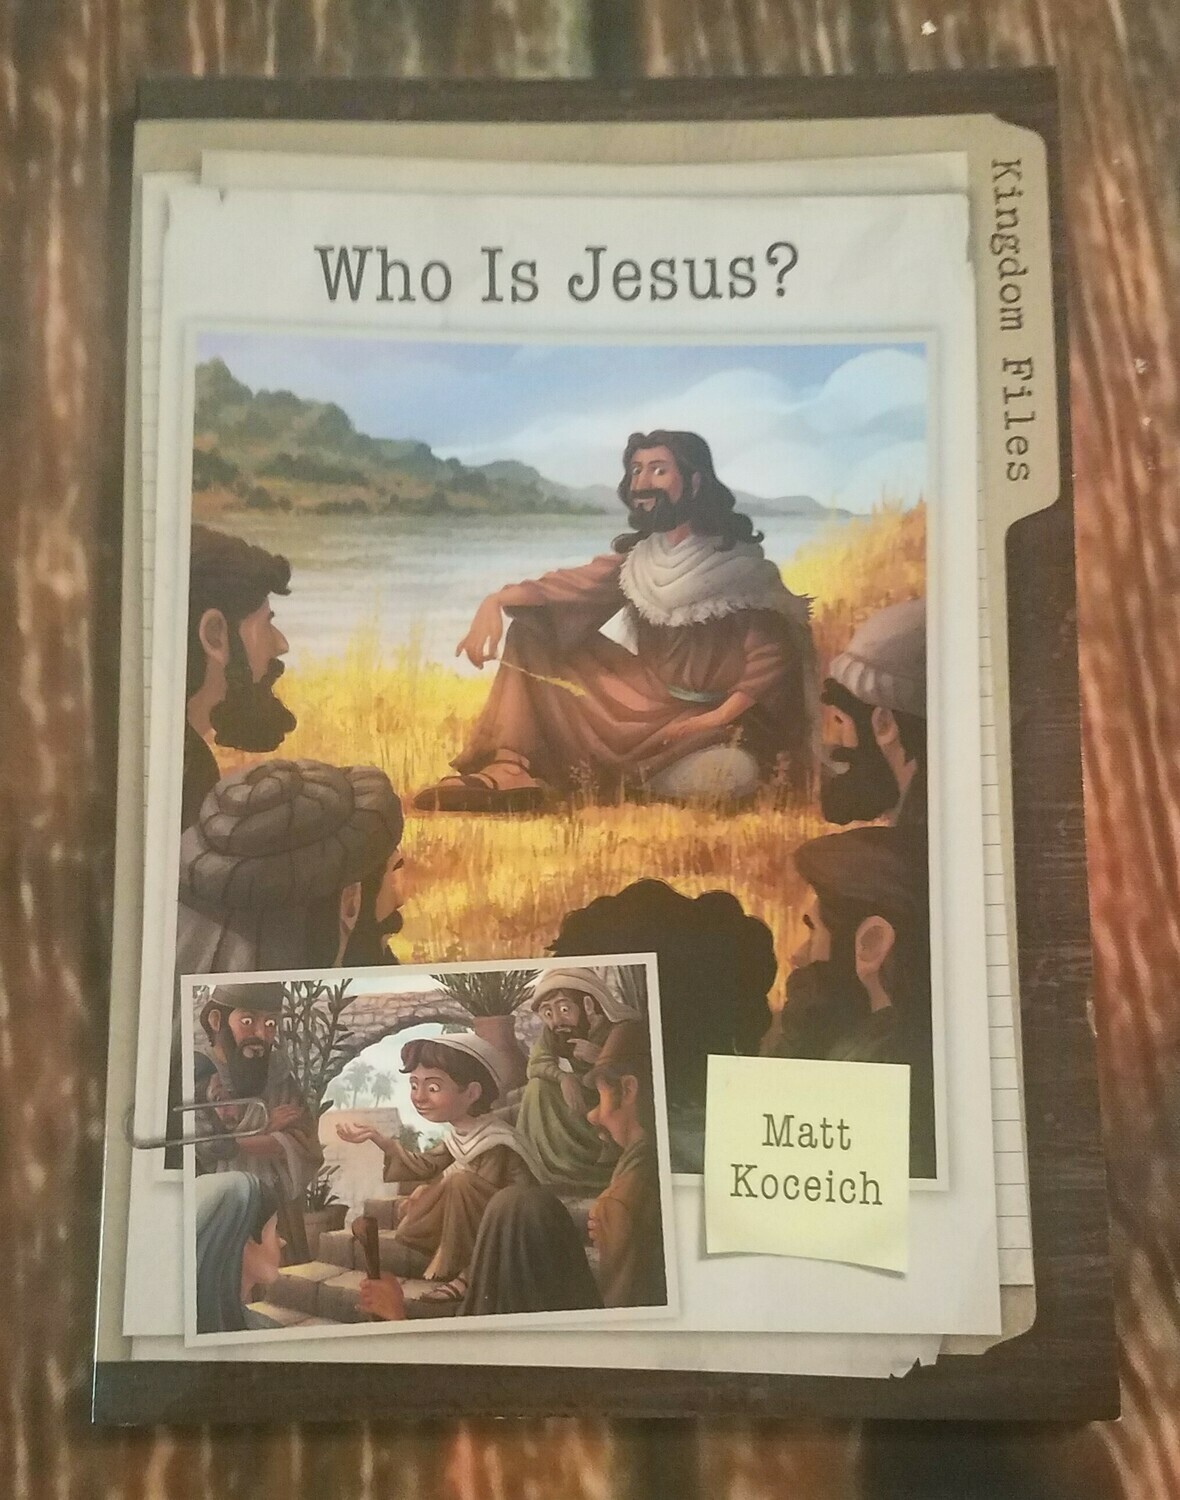 Kingdom Files: Who is Jesus? by Matt Koceich